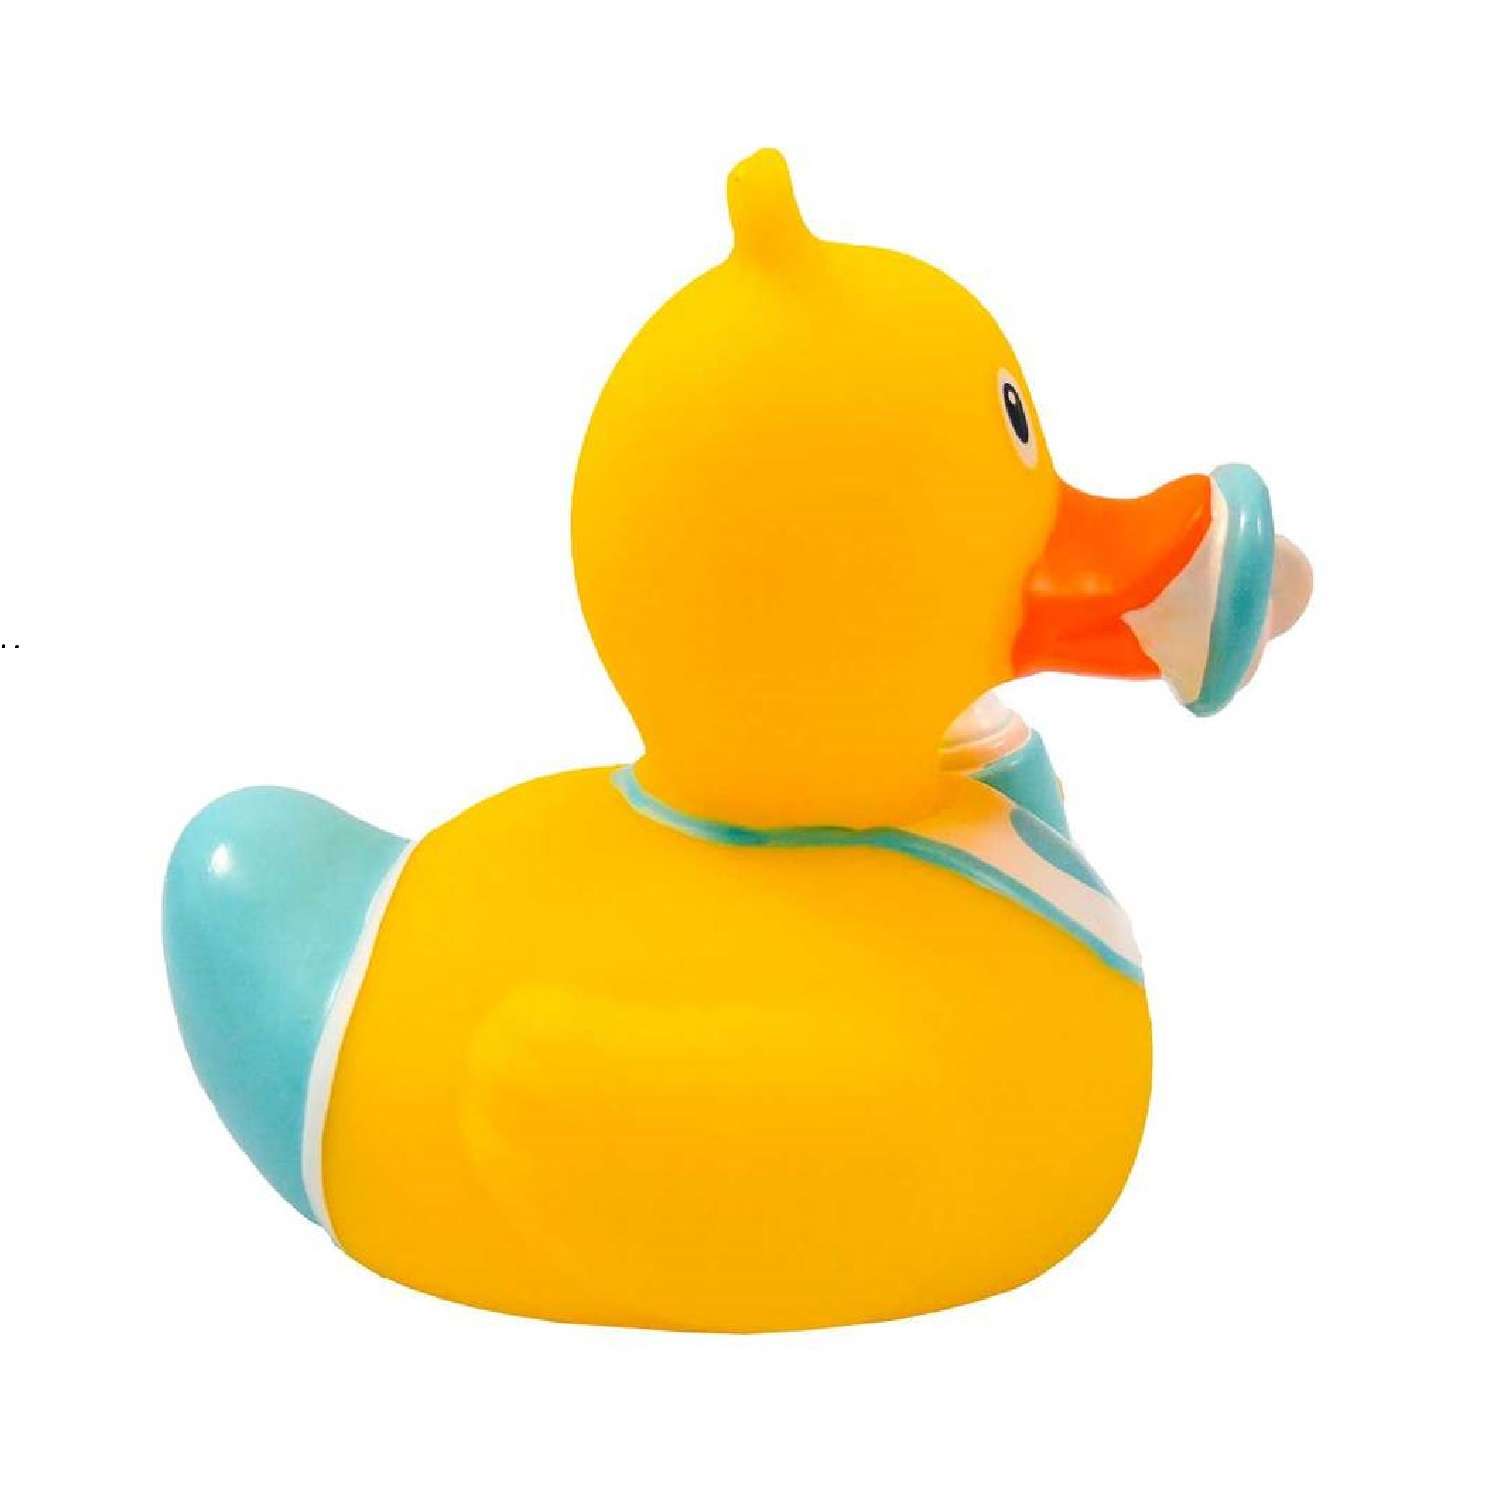 Игрушка Funny ducks для ванной Ребенок мальчик уточка 1849 - фото 3